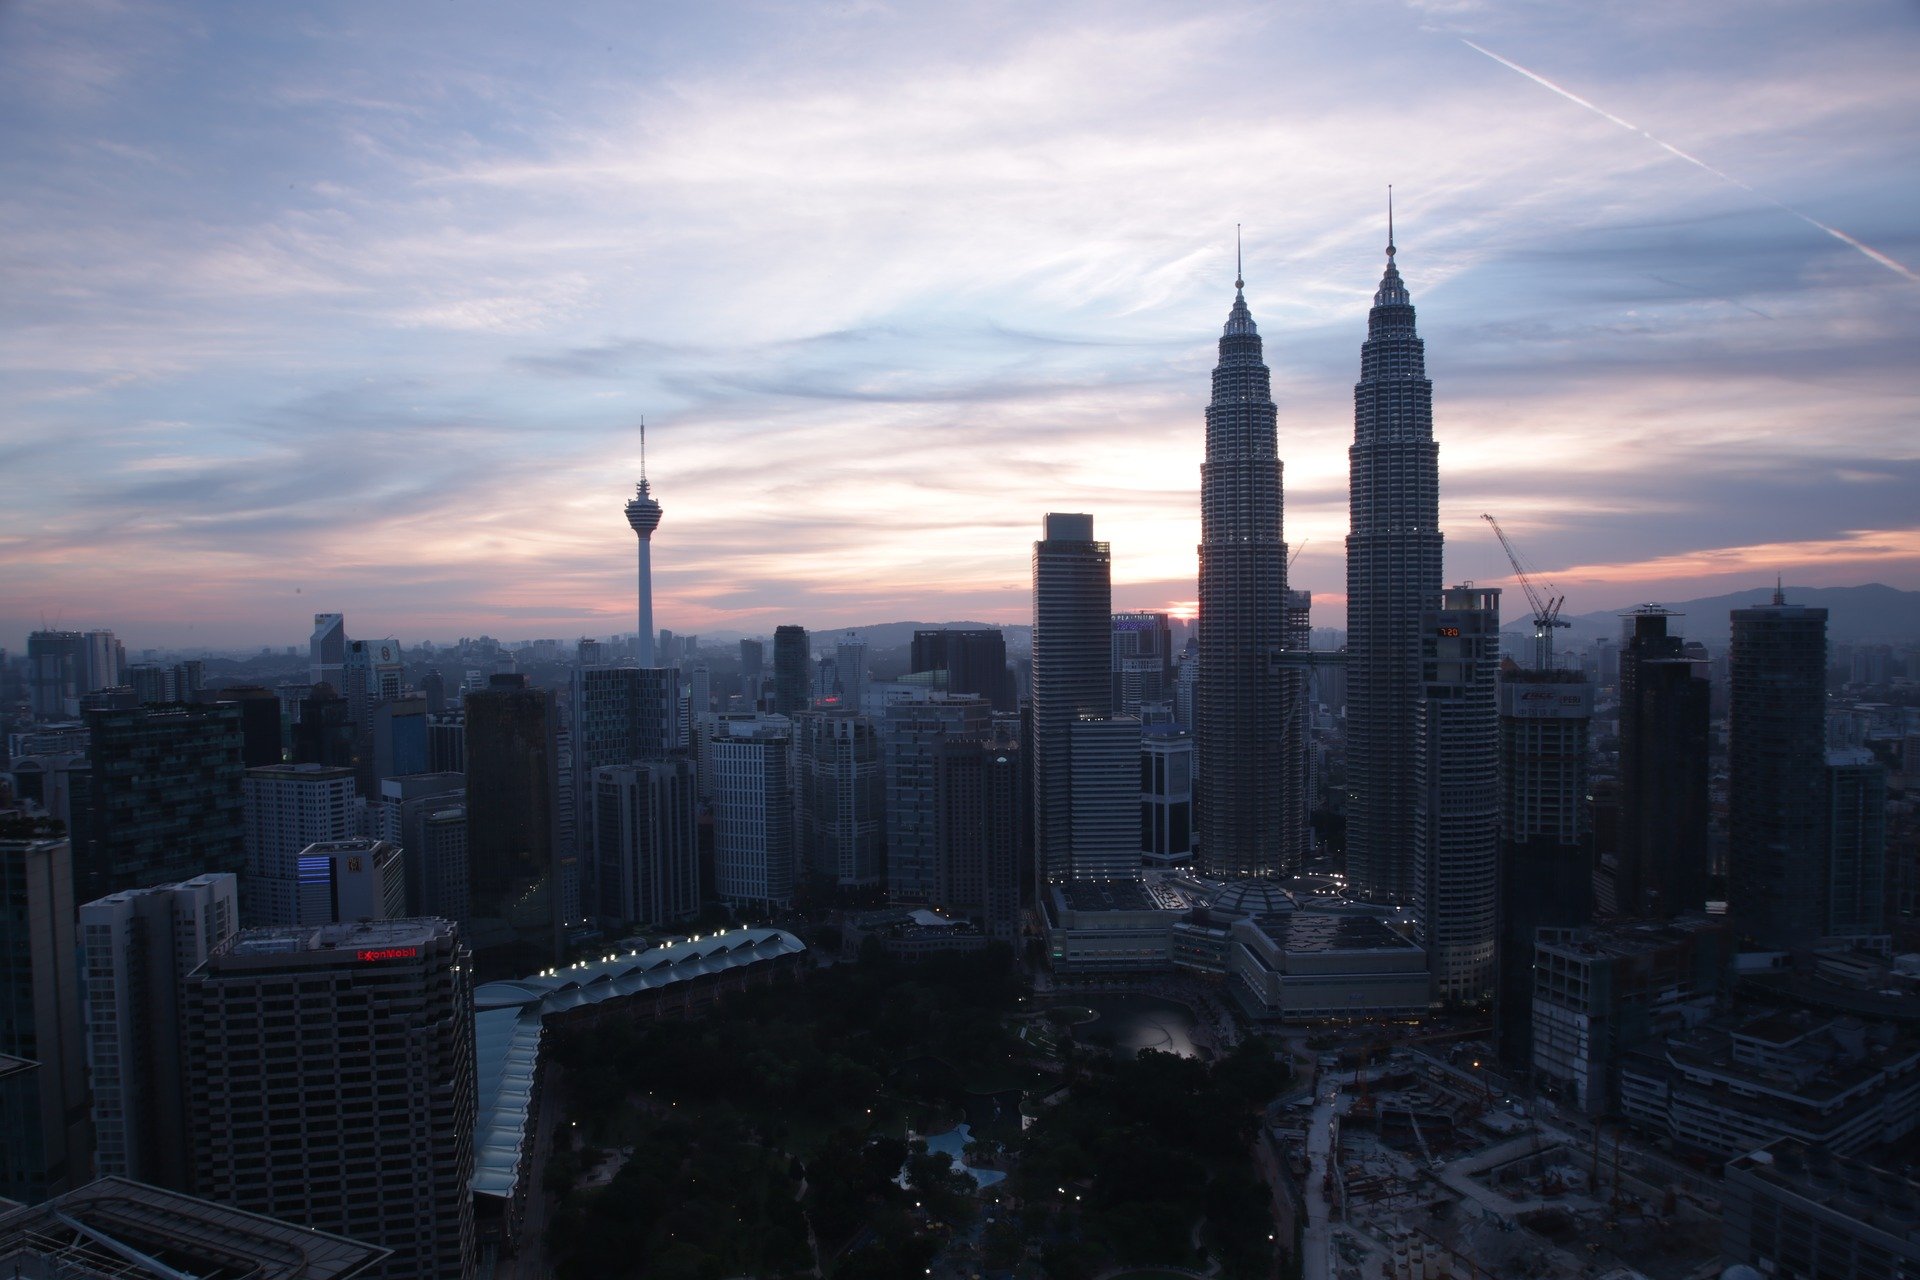 File photo of Kuala Lumpur. Photo: Artmopro